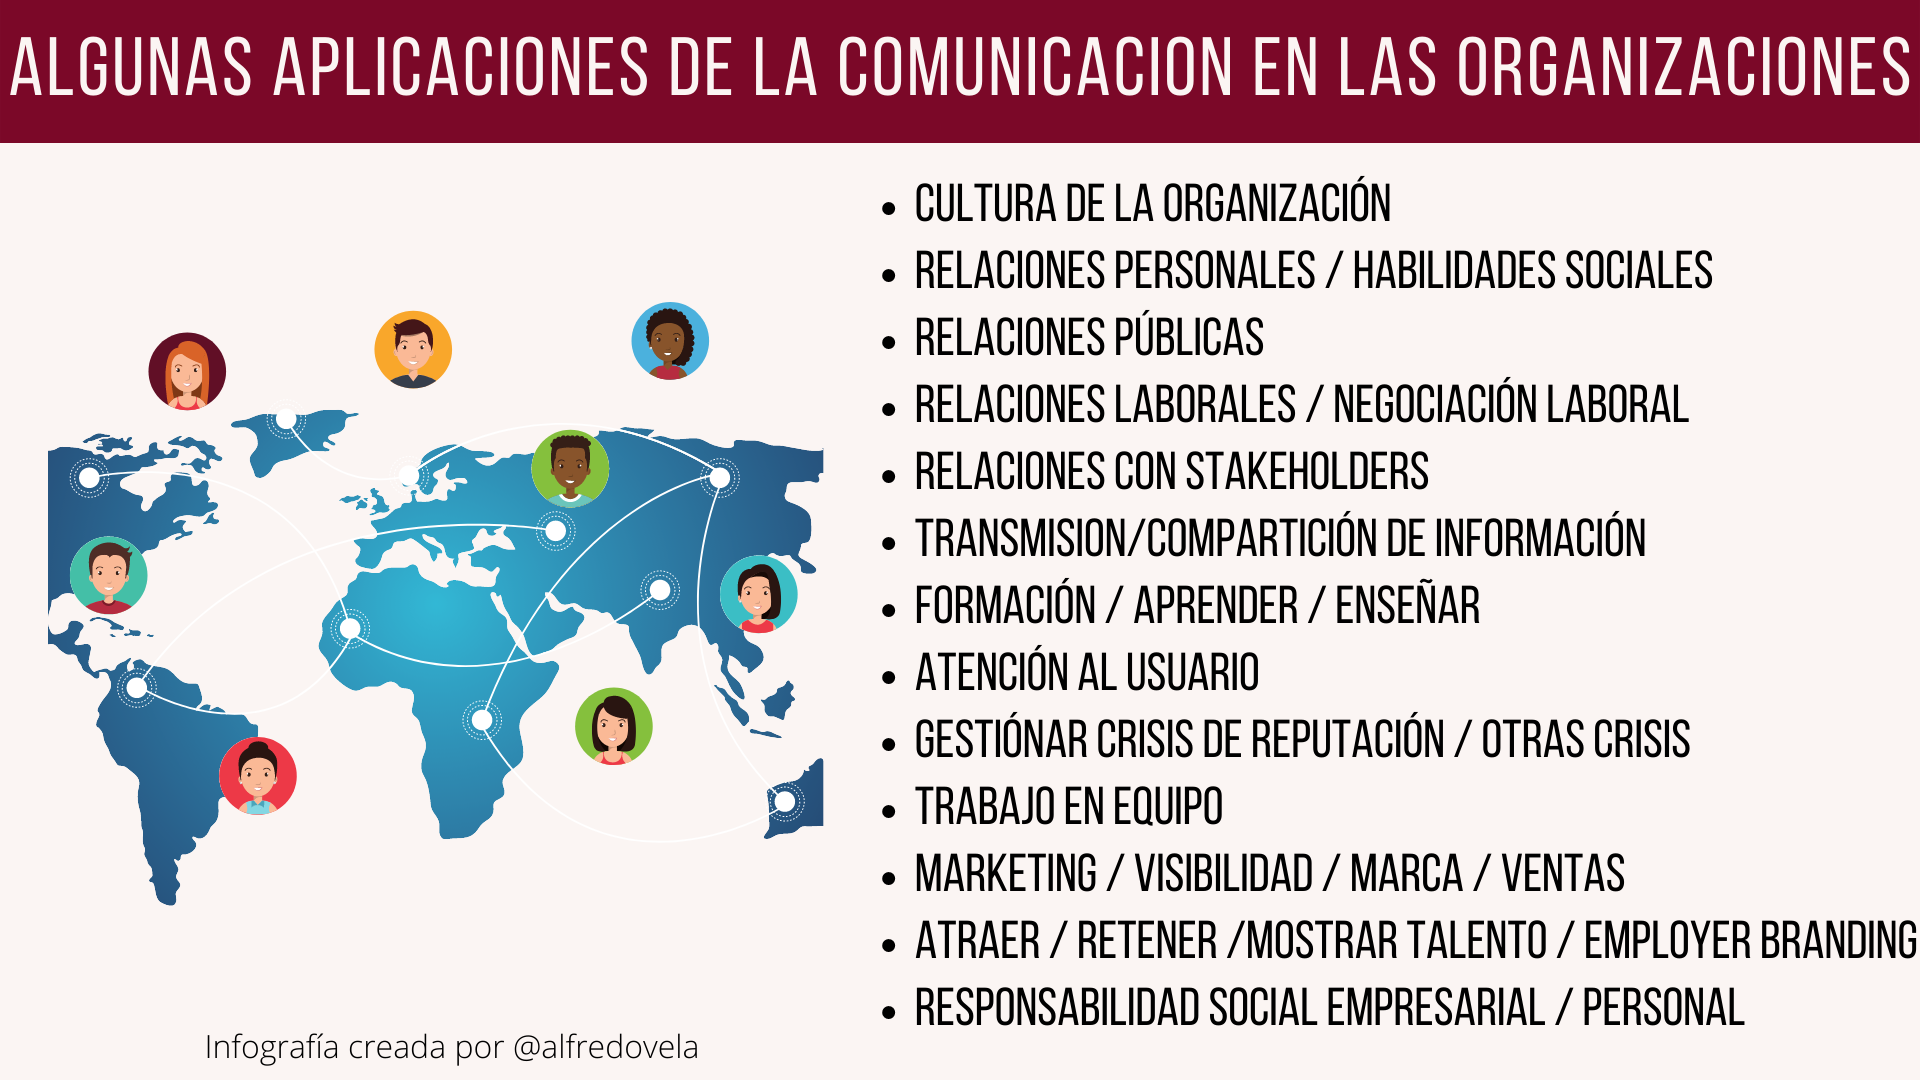 ALGUNAS APLICACIONES DE LA COMUNICACION EN LAS ORGANIZACIONES

 

« CULTURA DE LA ORGANIZACION

« RELACIONES PERSONALES / HABILIDADES SOCIALES

« RELACIONES PUBLICAS

« RELACIONES LABORALES / NEGOCIACION LABORAL

« RELACIONES CON STAKEHOLDERS

« TRANSMISION/COMPARTICION DE INFORMACION

« FORMACION / APRENDER / ENSENAR

« ATENCION AL USUARIO

+ GESTIONAR CRISIS DE REPUTACION / OTRAS CRISIS

« TRABAJO EN EQUIPO

« MARKETING / VISIBILIDAD / MARCA / VENTAS

« ATRAER / RETENER /MOSTRAR TALENTO / EMPLOYER BRANDING
« RESPONSABILIDAD SOCIAL EMPRESARIAL / PERSONAL

 

nfografia creada por @alfredovela